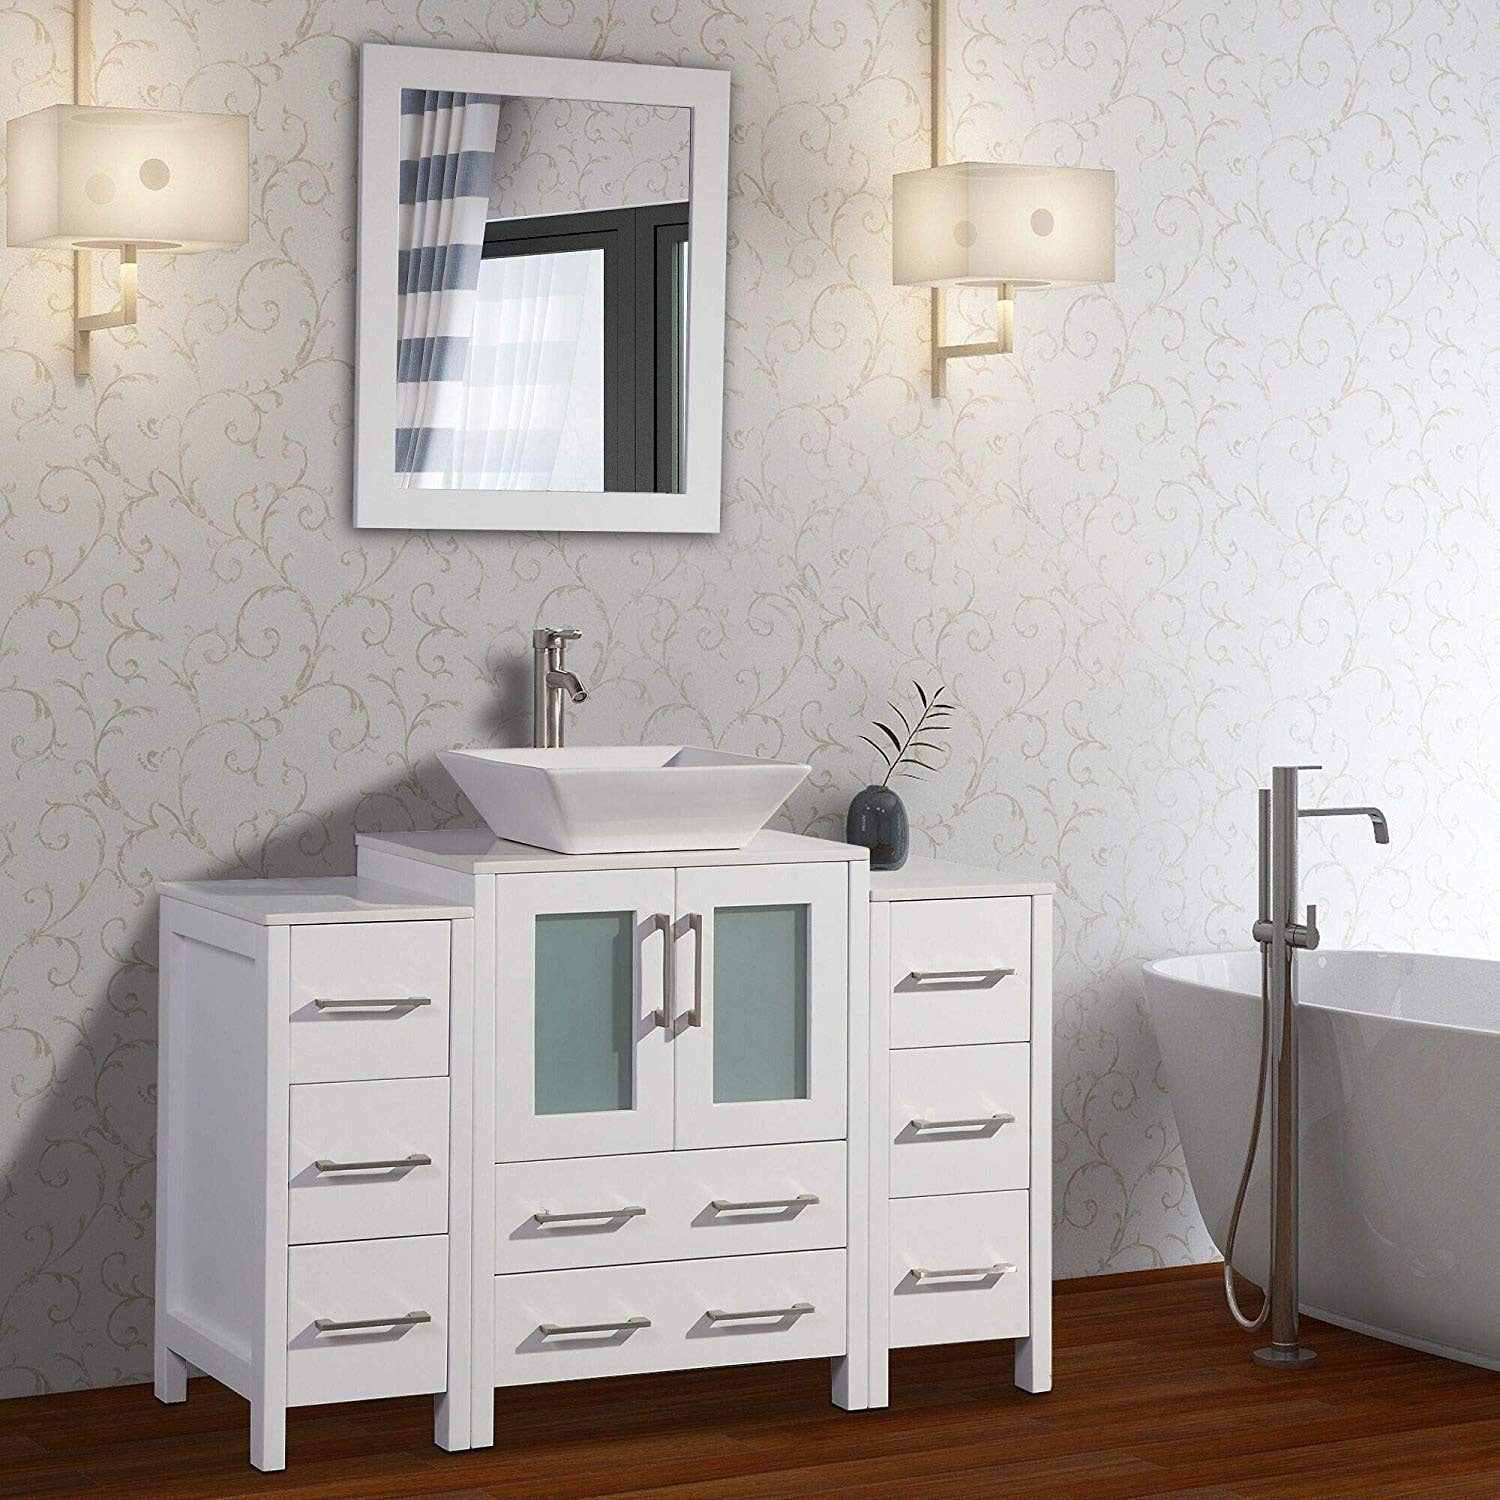 Vanity Art 48 Inch Single Sink Bathroom Vanity Set 8 Drawers